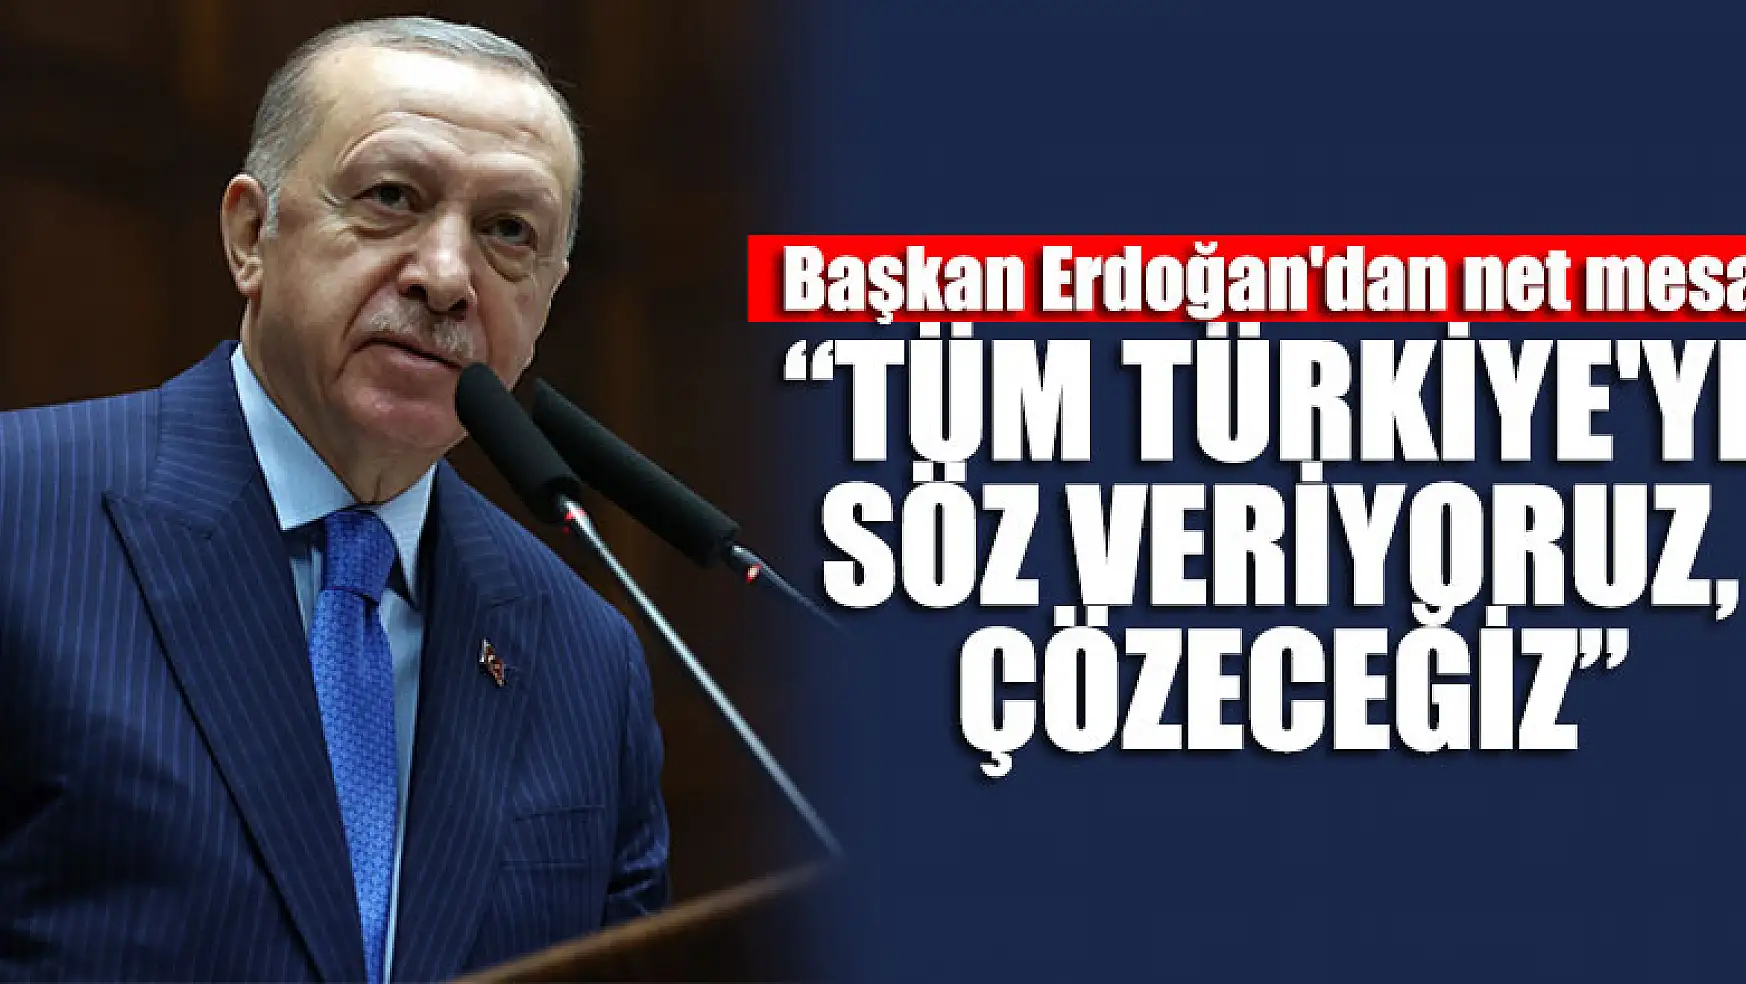 Başkan Erdoğan'dan net mesaj: Tüm Türkiye'ye söz veriyoruz, çözeceğiz